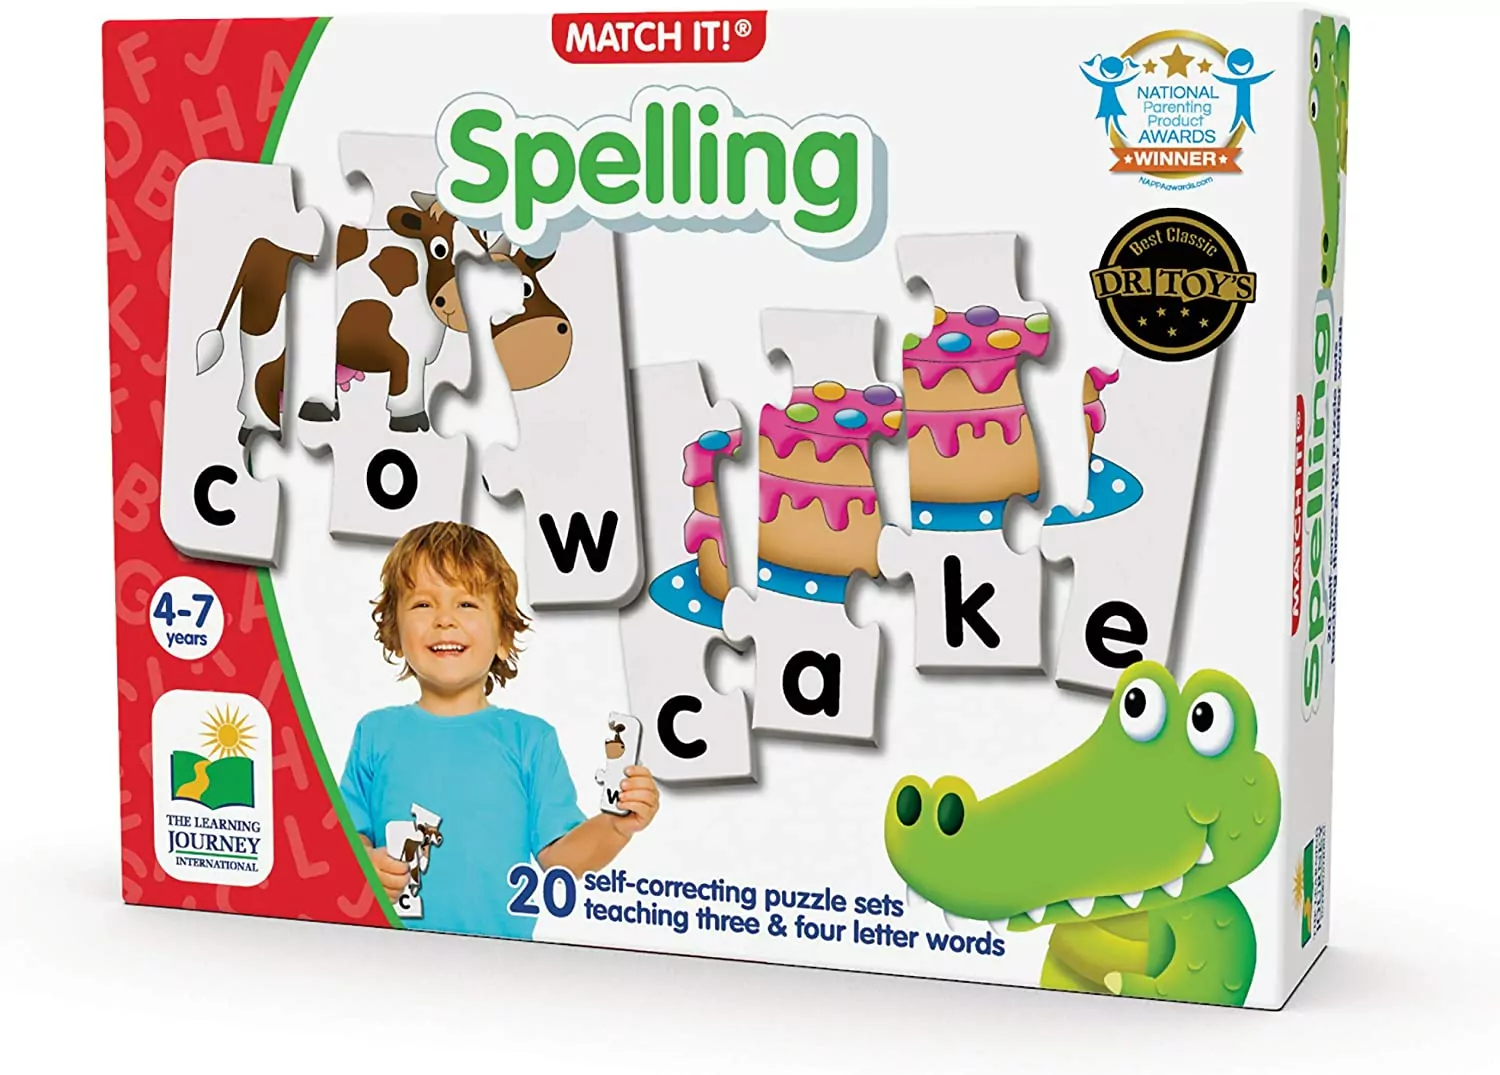 Spelling games for kids